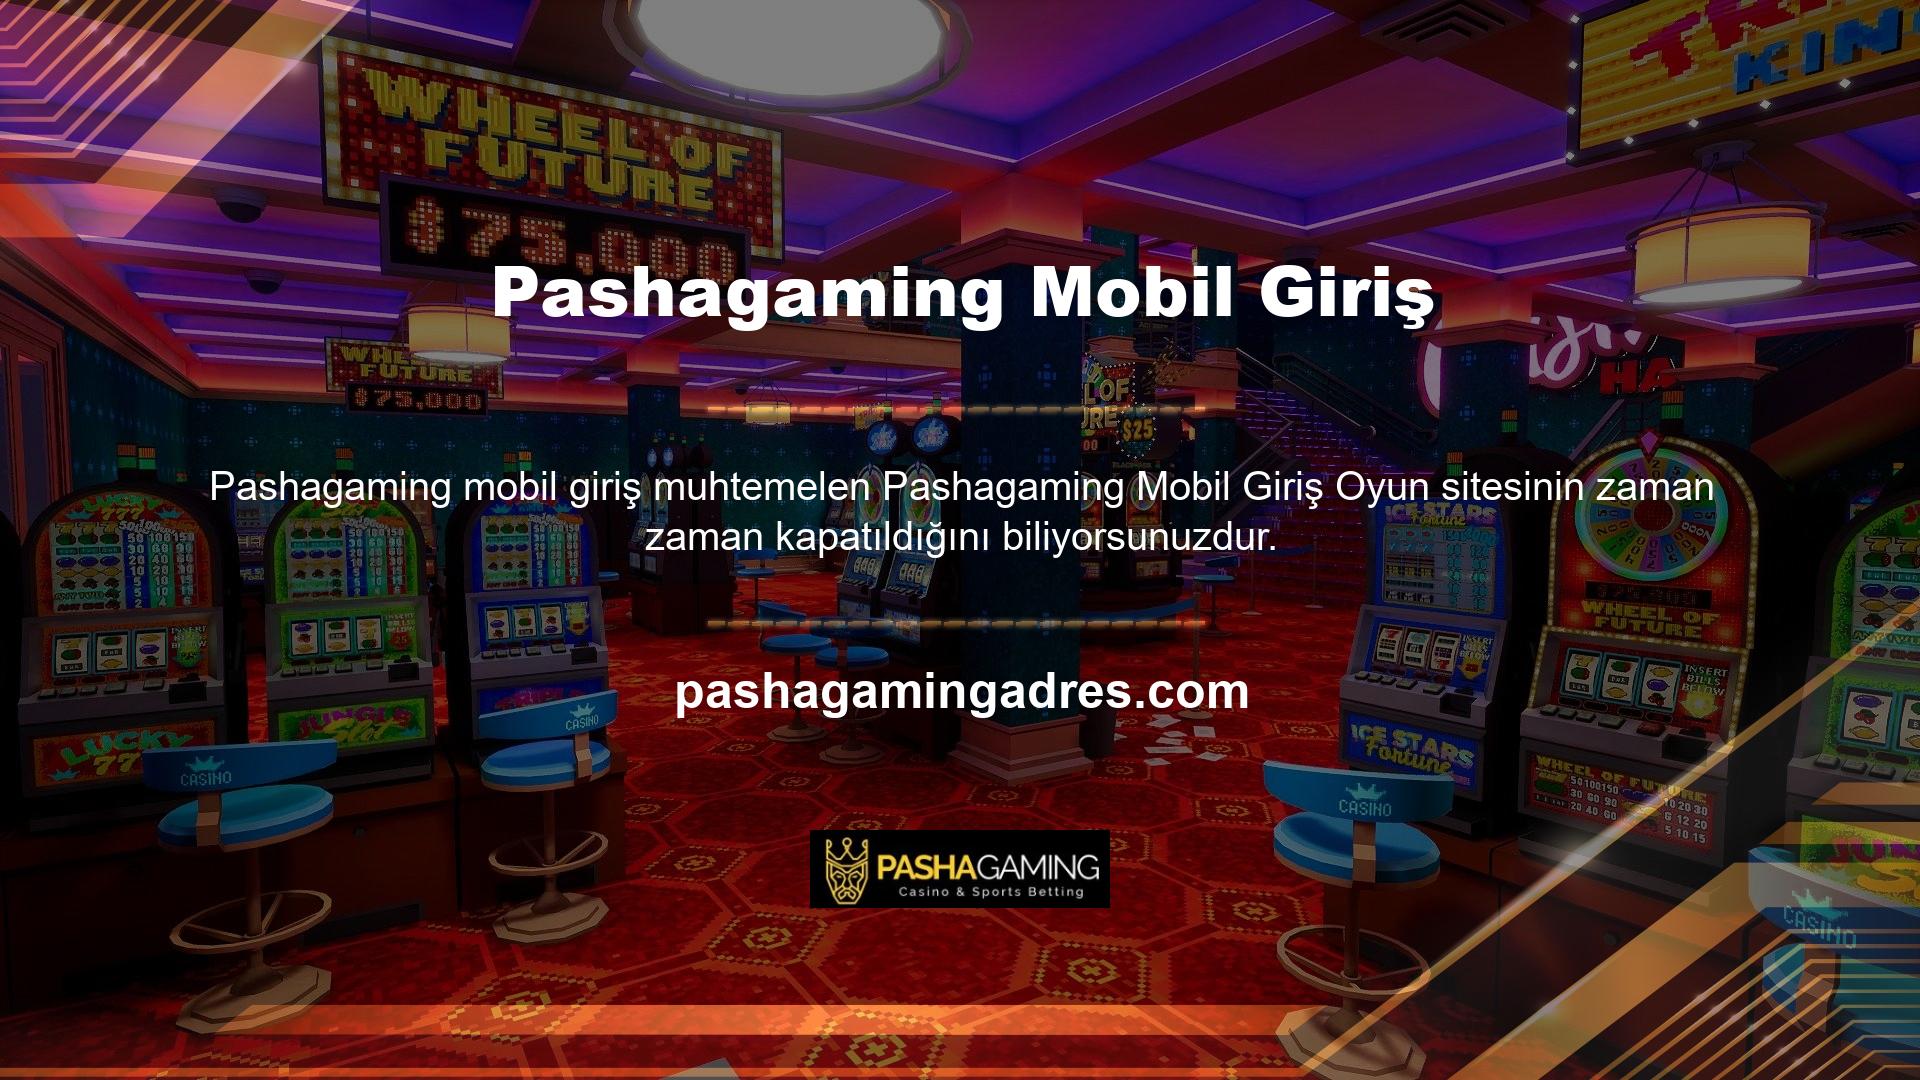 Bu sorunlar, Pashagaming çevrimiçi bahis sitesinin mobil girişli bir canlı oyun ve casino sitesi olmasından kaynaklanmaktadır